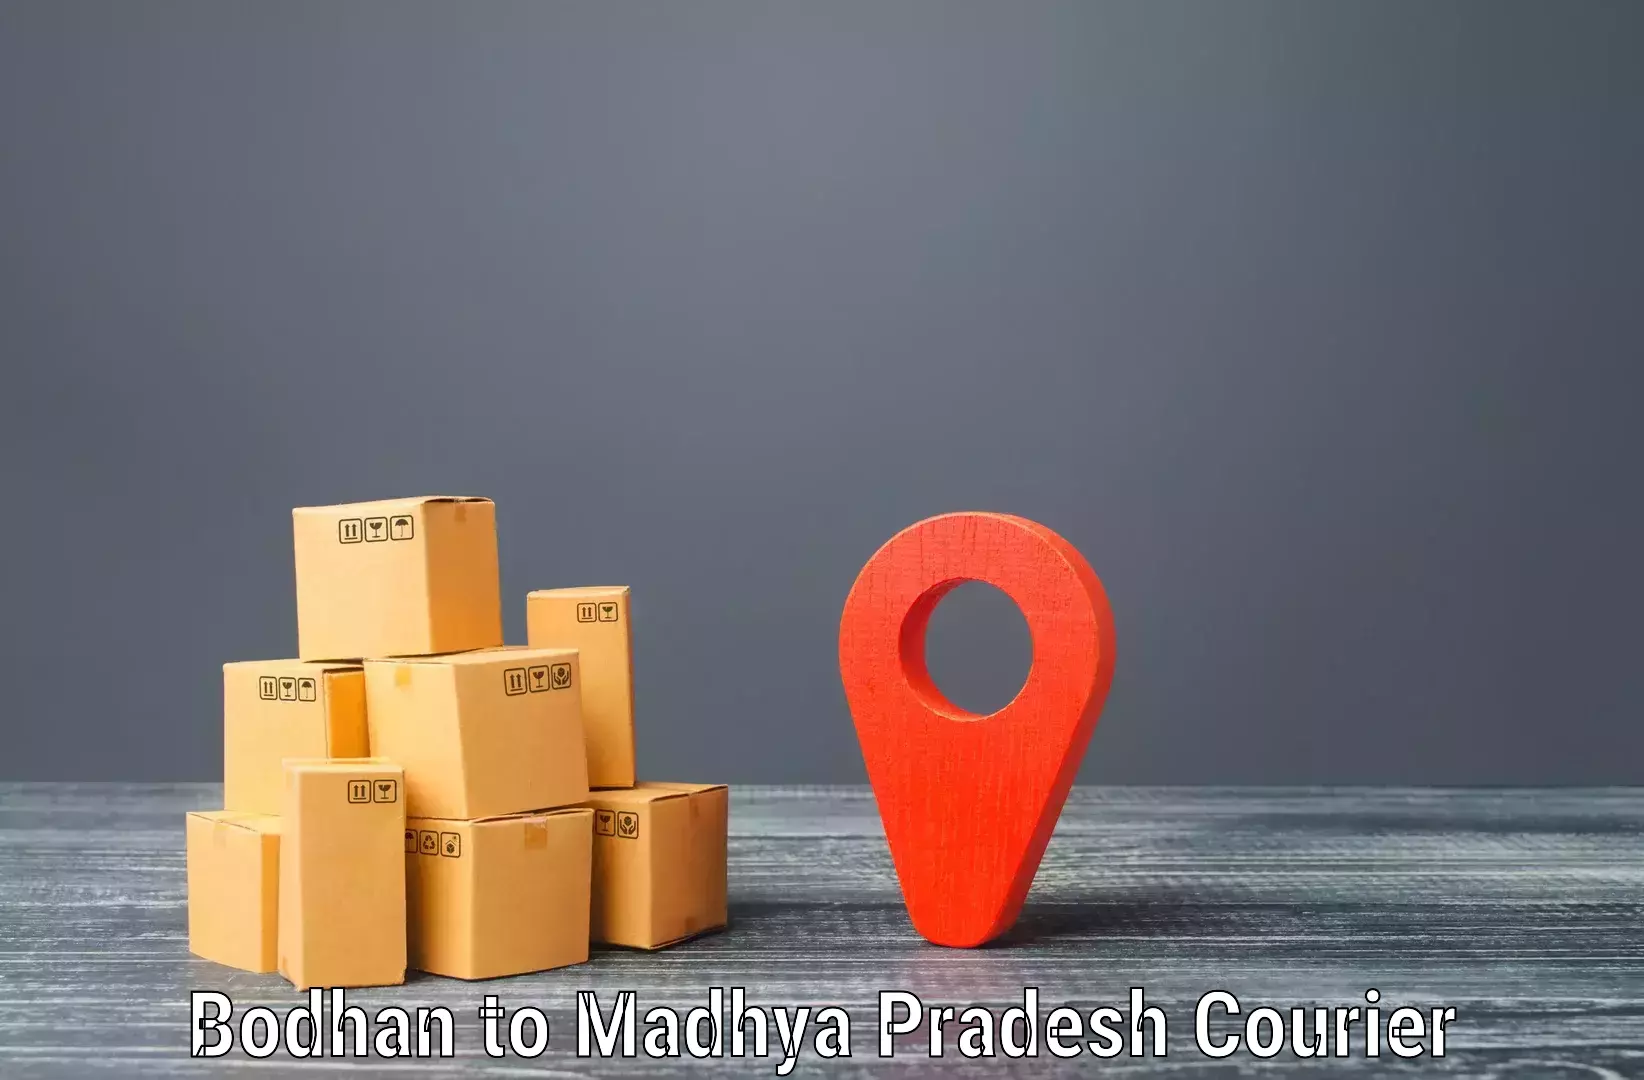 International shipping in Bodhan to Chhindwara